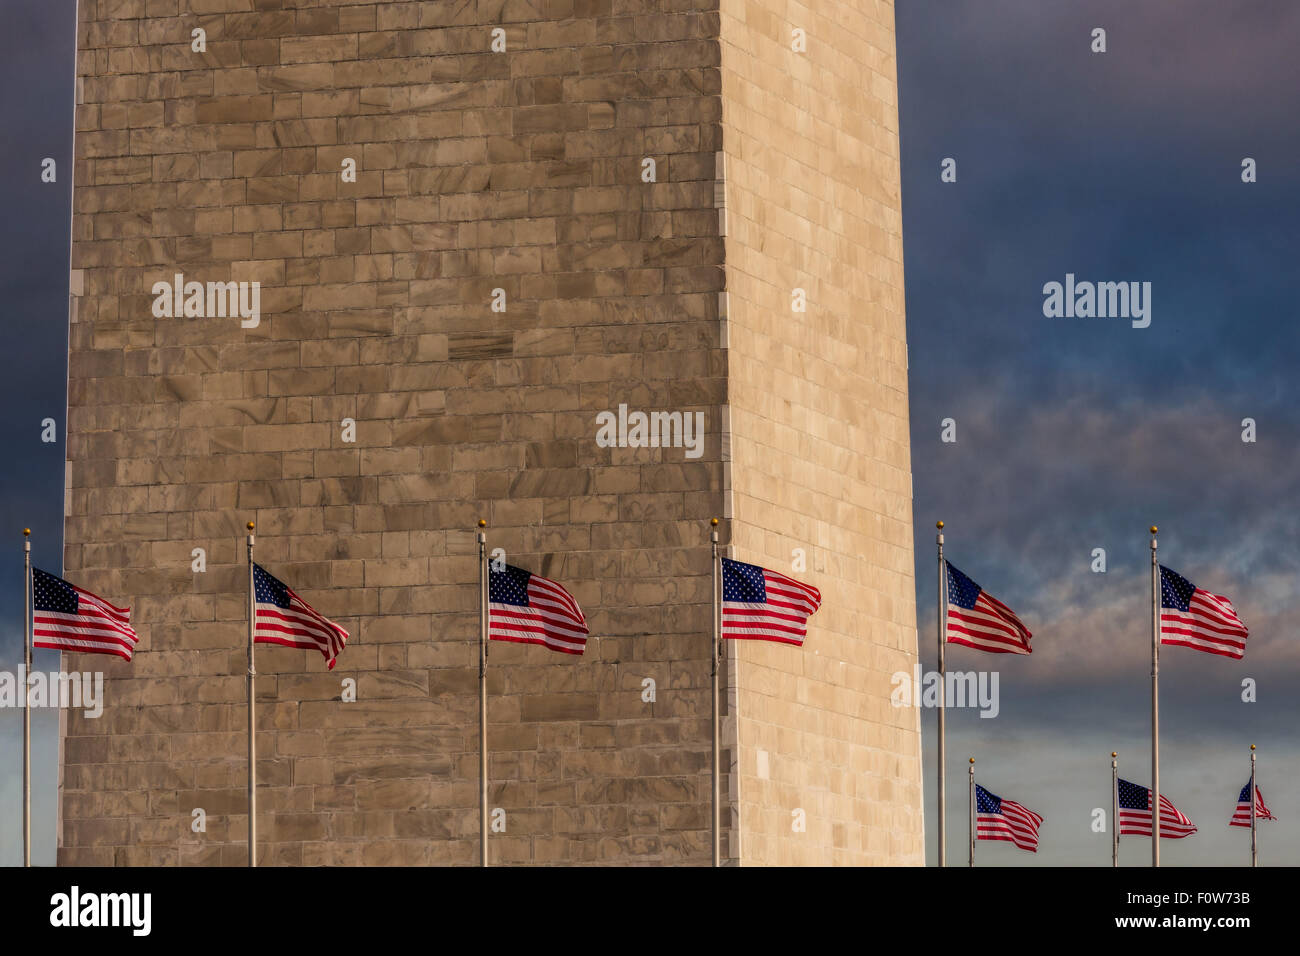 Cerrar vista de la sección inferior del Monumento a Washington con los Estados Unidos de América banderas que rodean al monumento. Foto de stock